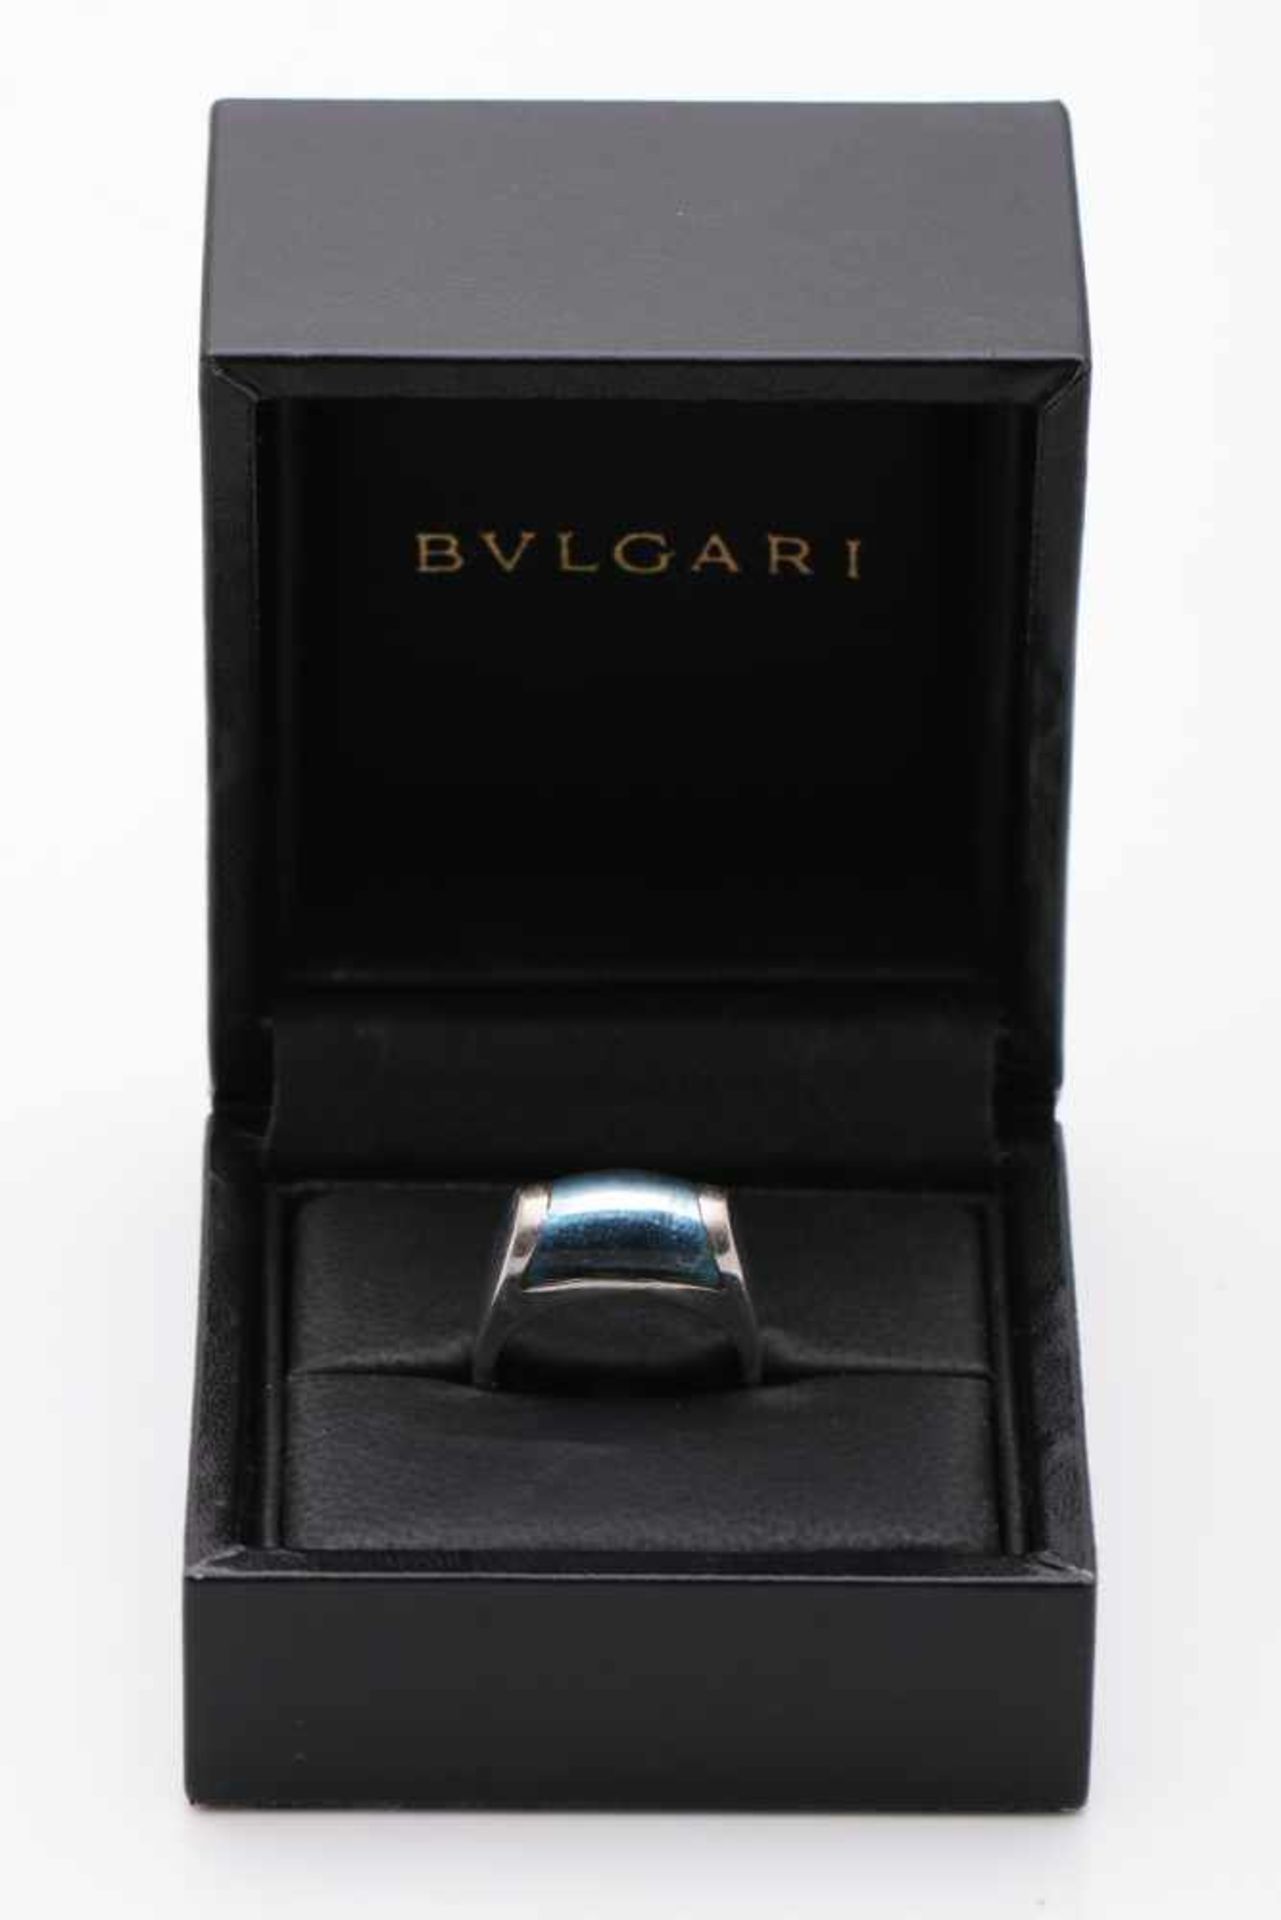 BULGARI Ring Tronchetto 750er Weißgold mit einem Blautopas, Gewicht 8,88g, Ringgröße 53, original - Bild 3 aus 3